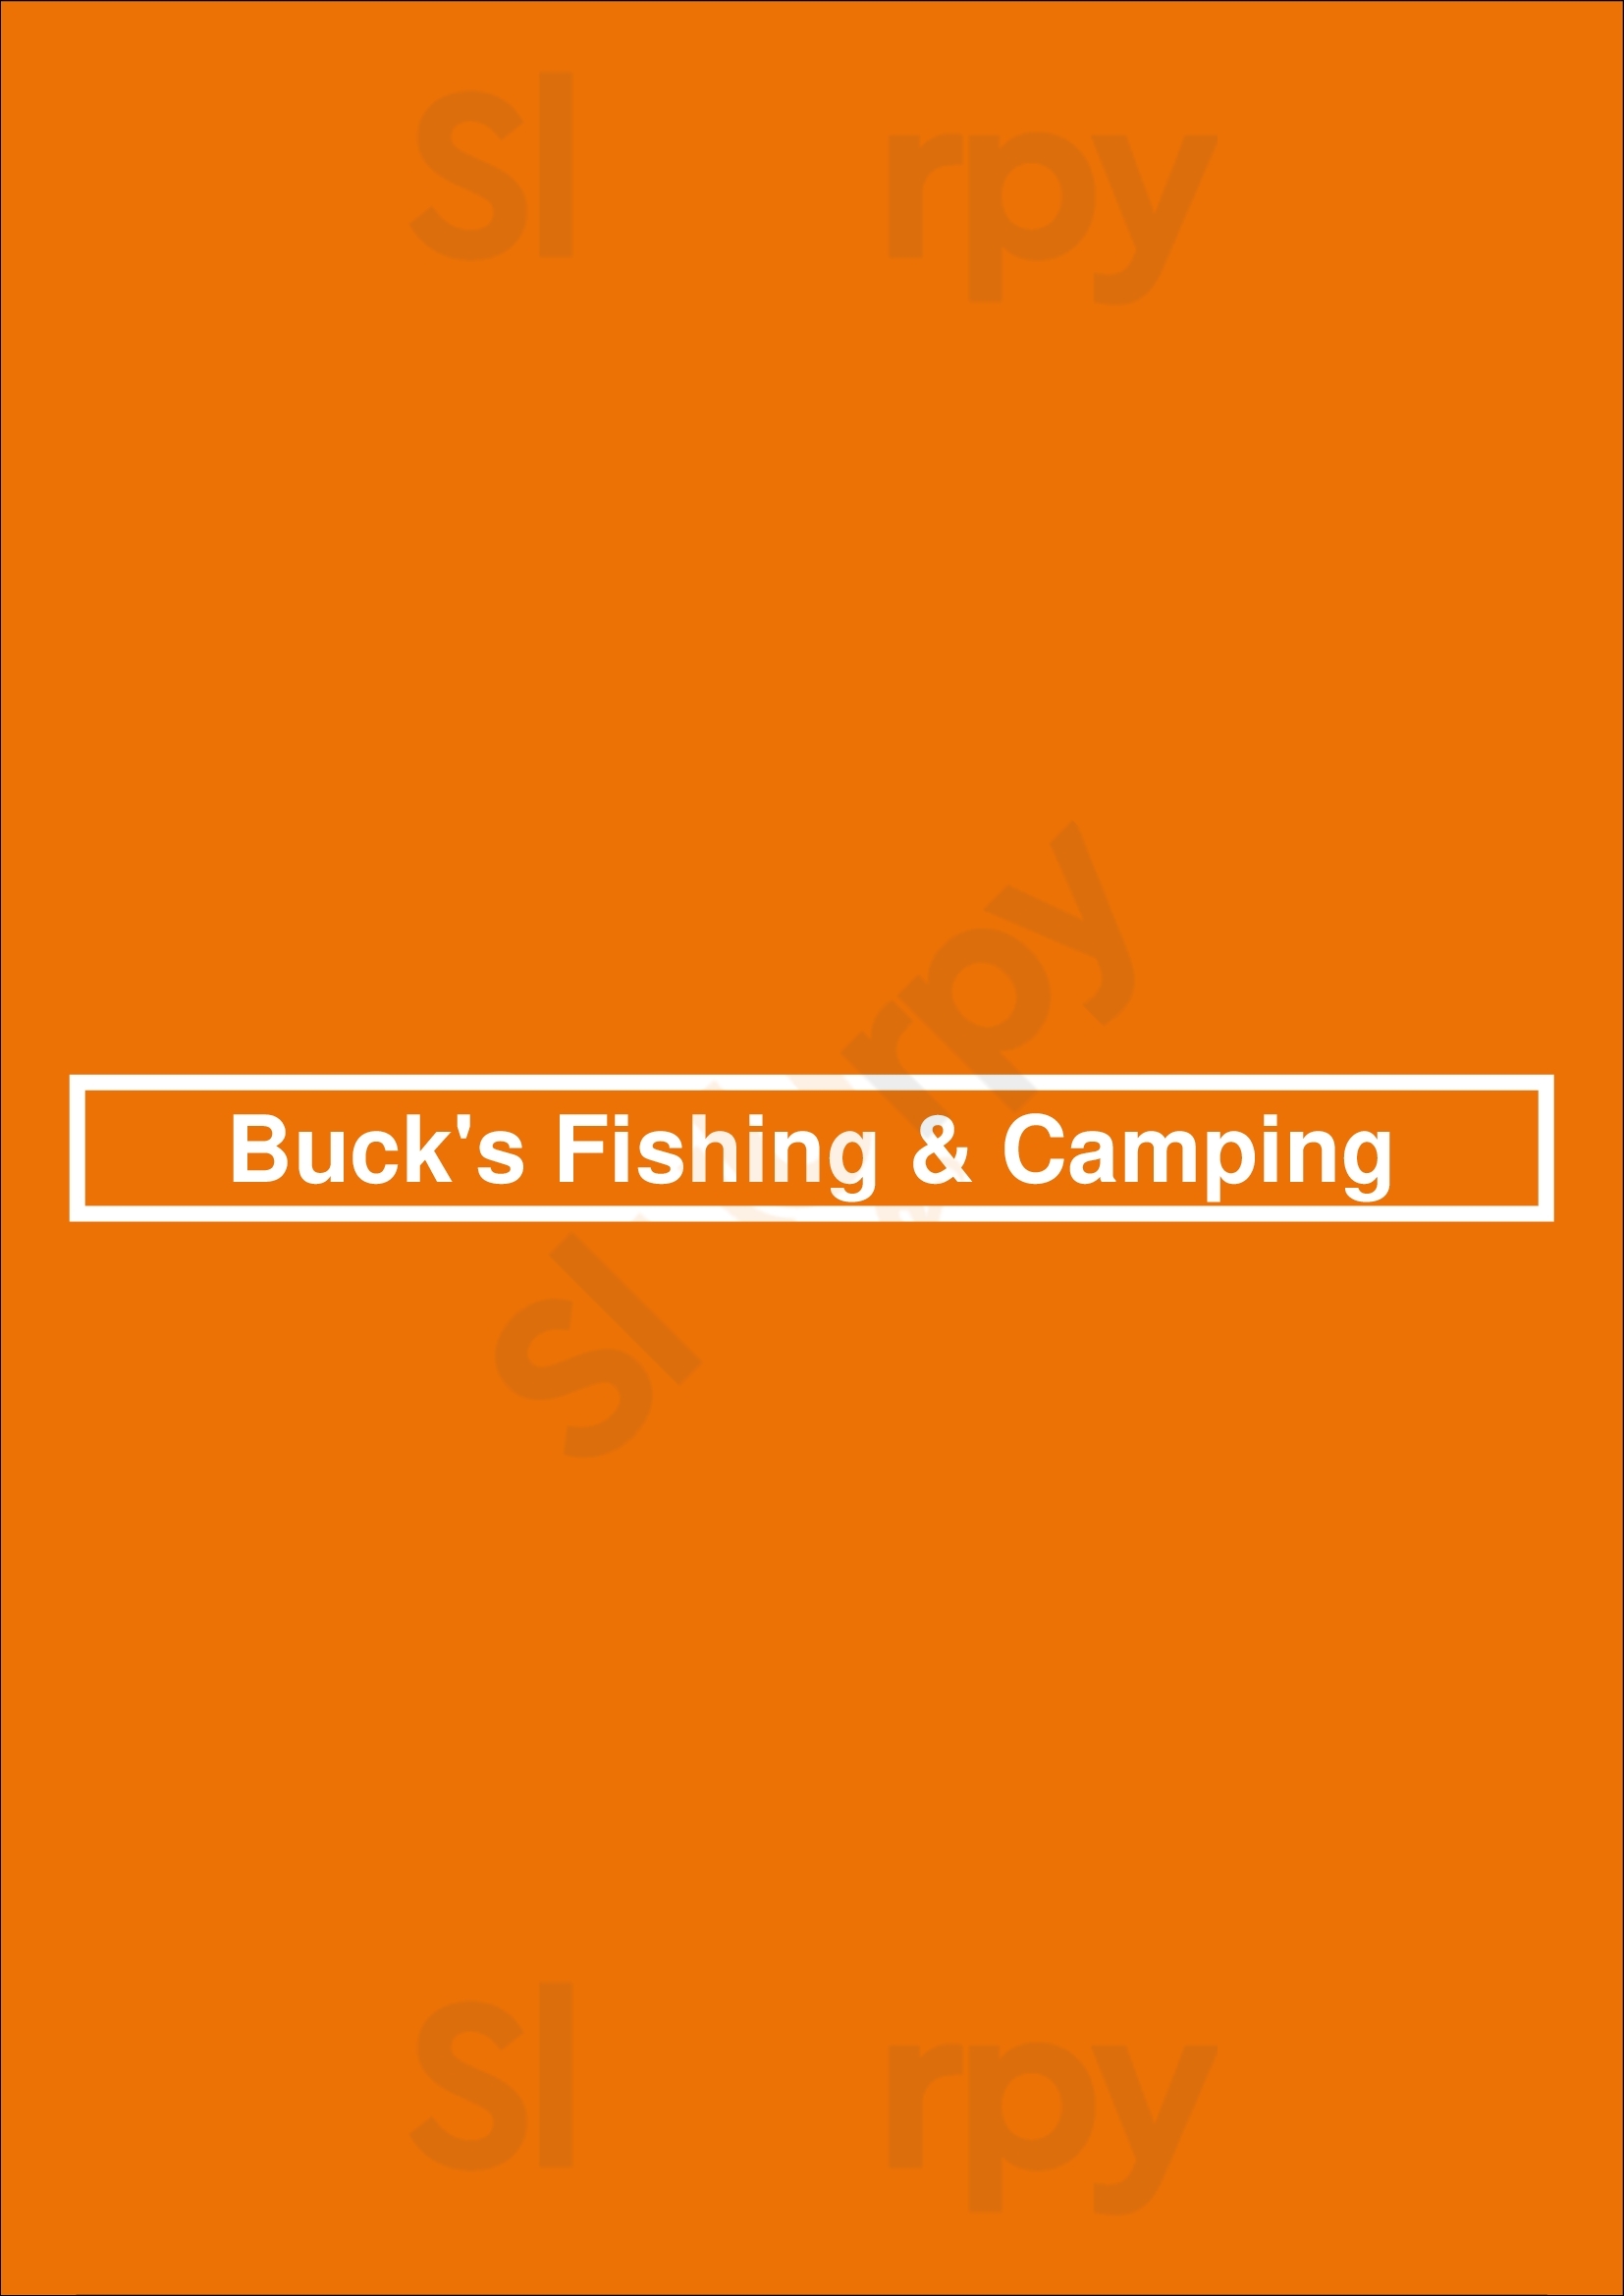 Buck's Fishing & Camping Washington DC Menu - 1